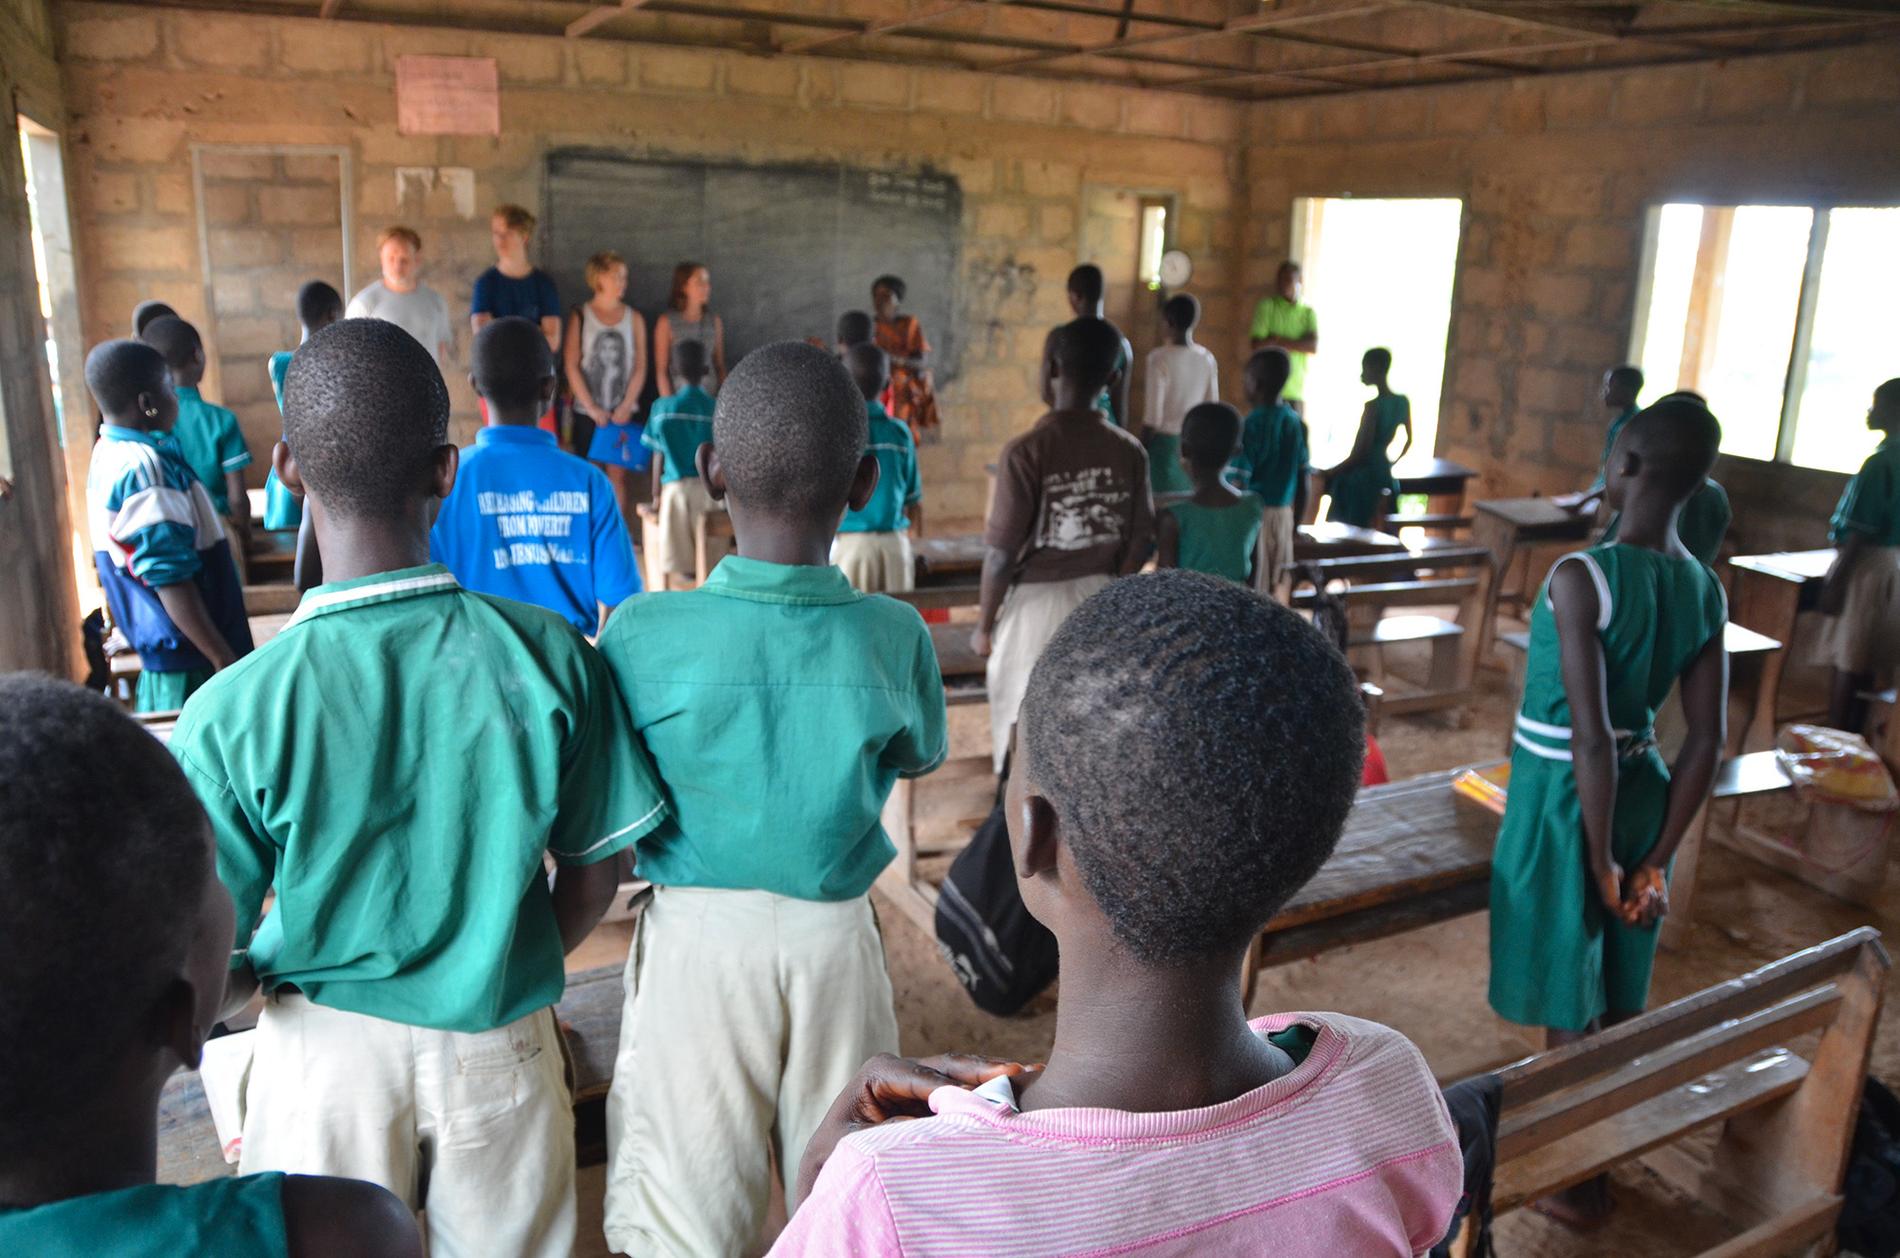 Nu driver de stiftelsen Make a Difference och samlar in pengar till ett barnhem och fattiga familjer i Ghana.